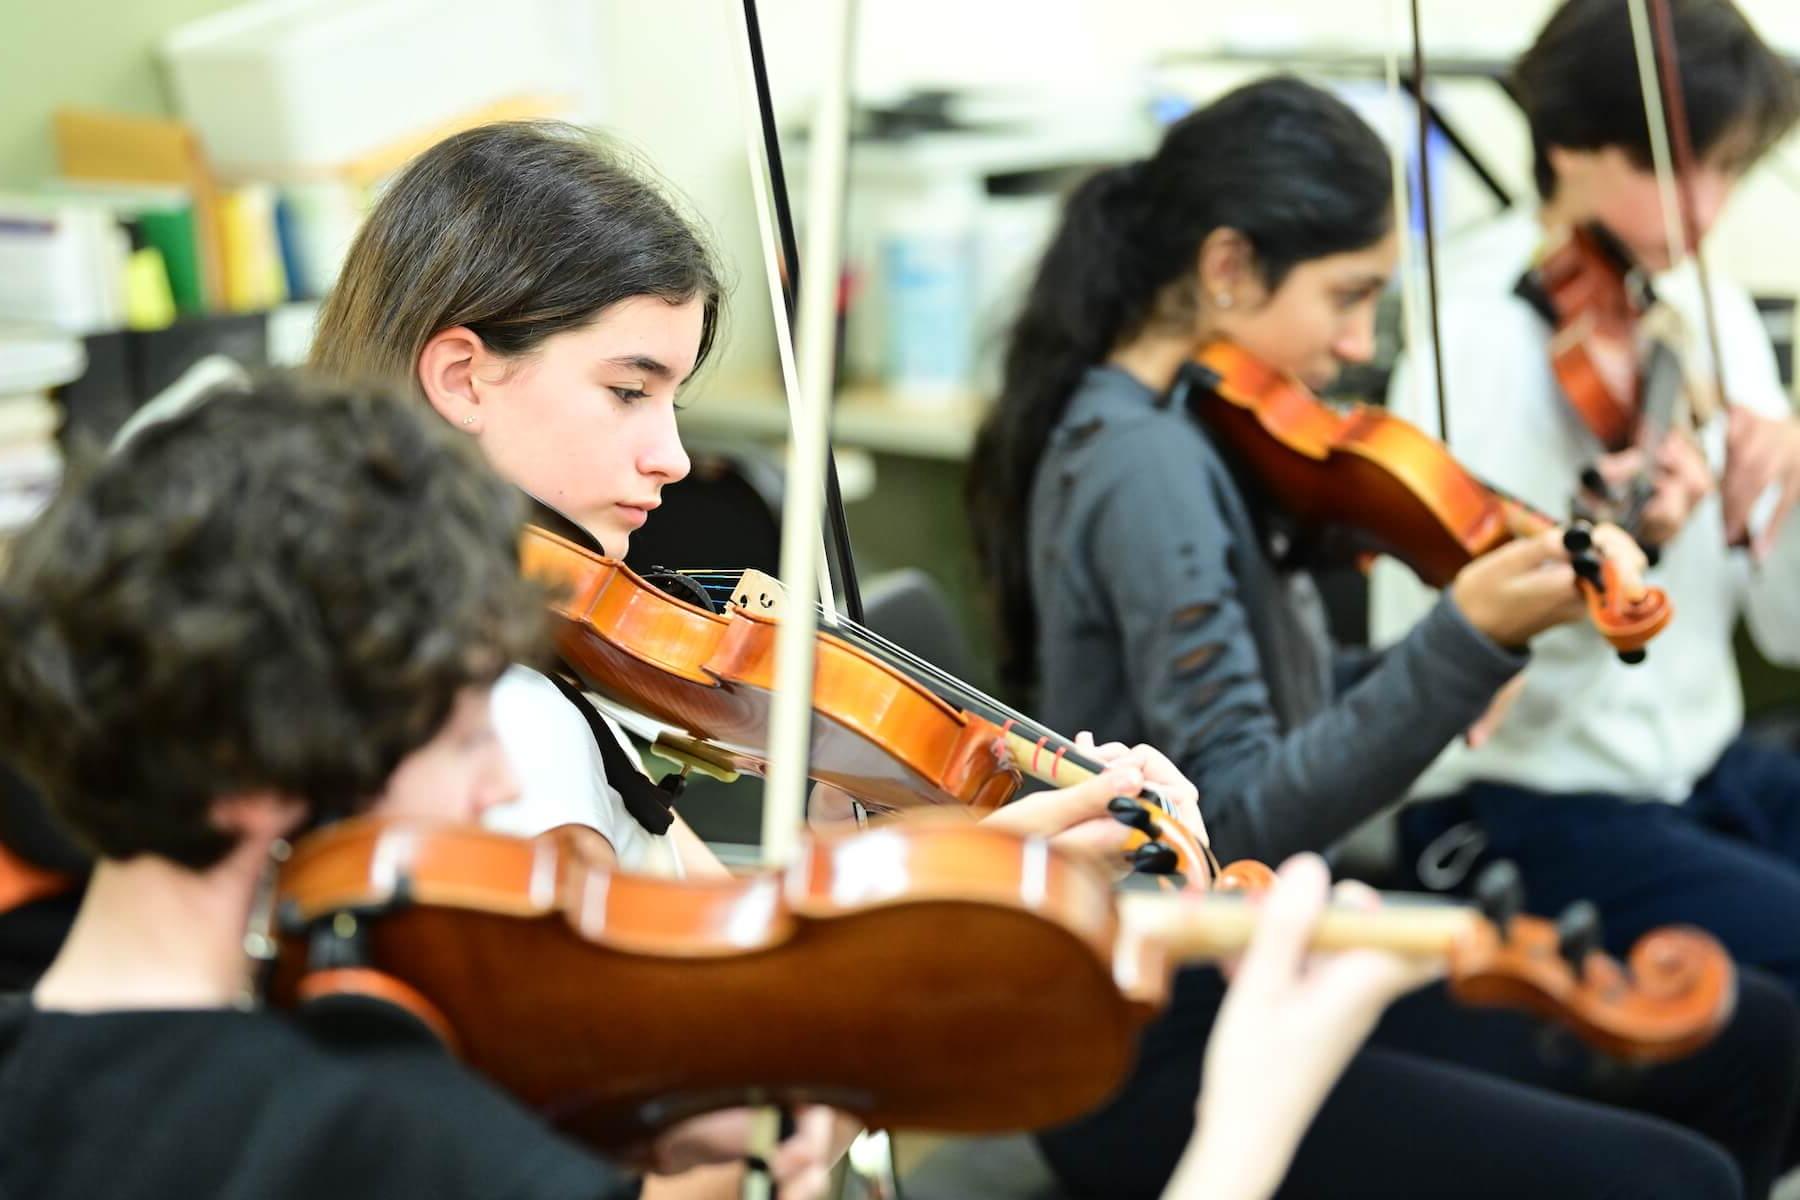 道德文化菲尔德斯顿学校的学生在弦乐课上练习小提琴